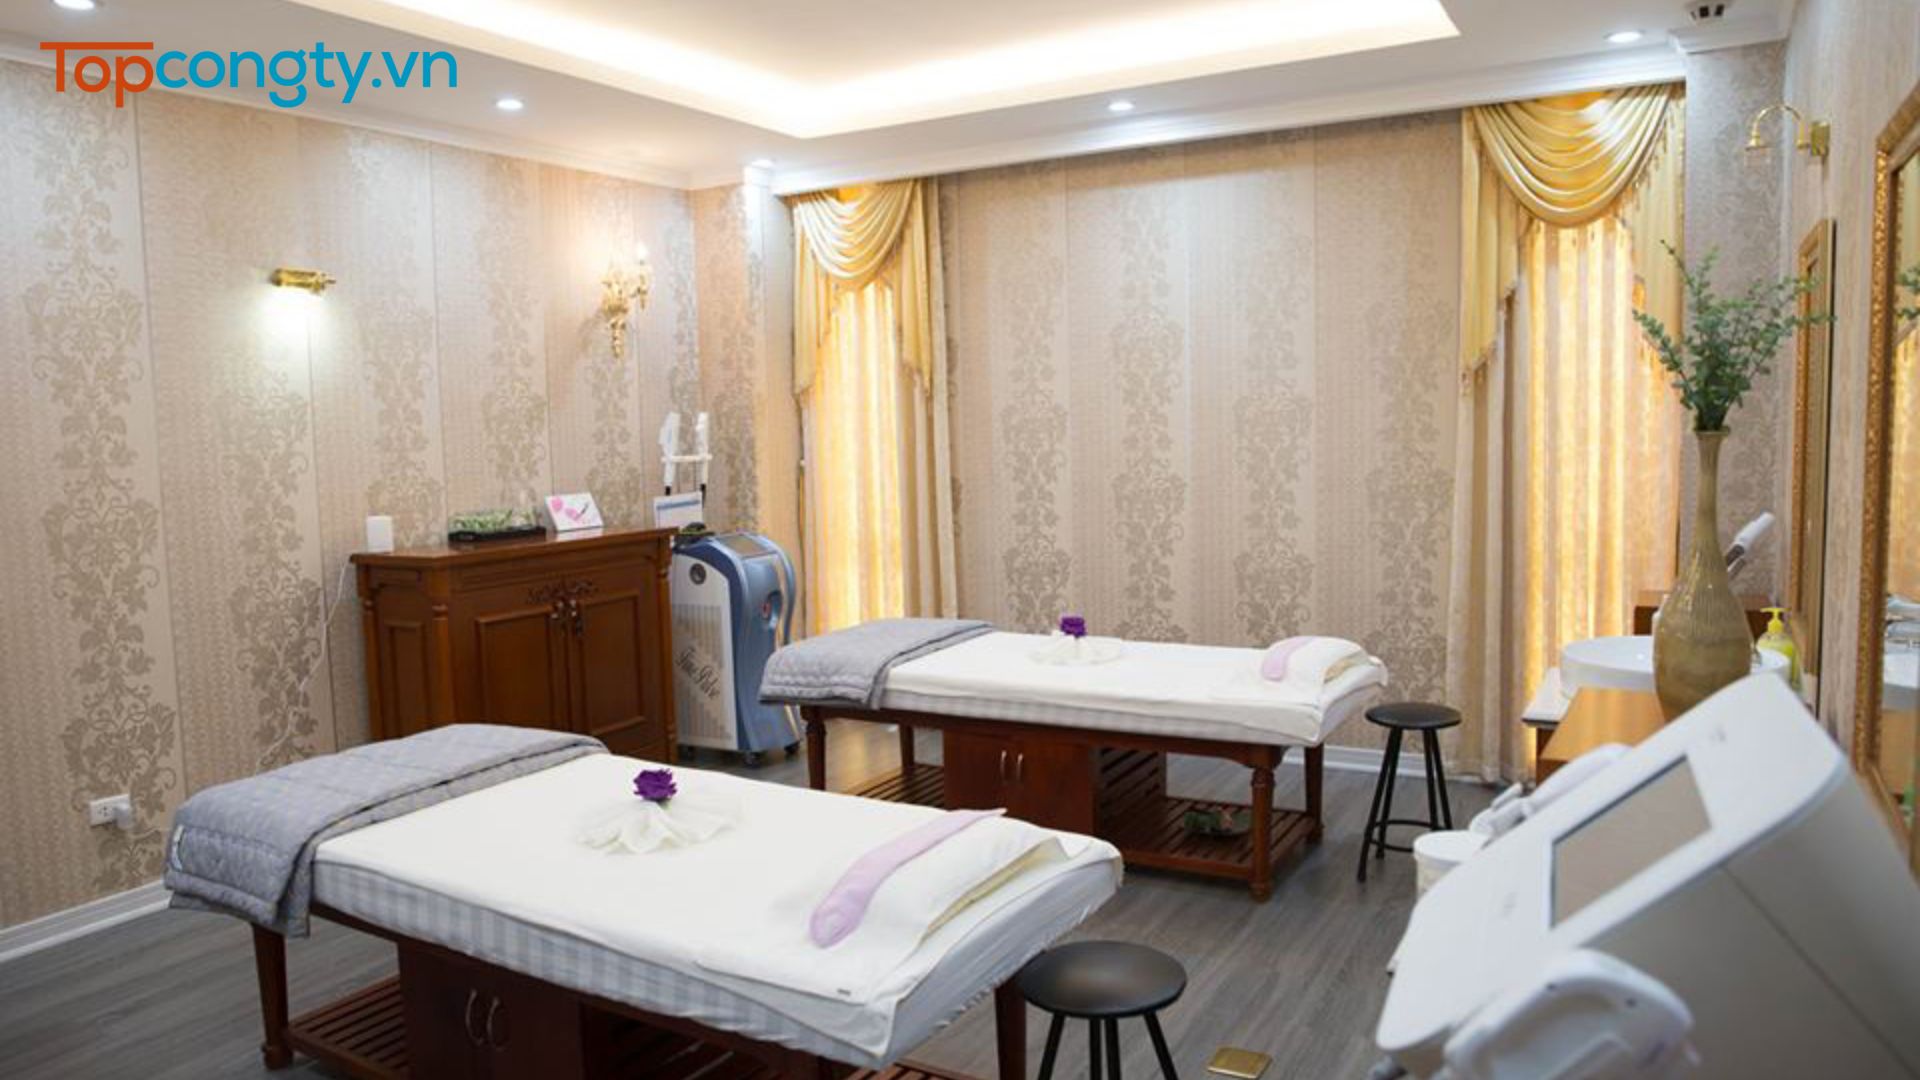 Dạ Yến Thảo Spa - Một trong các địa điểm massage ở Hà Nội được yêu thích nhất